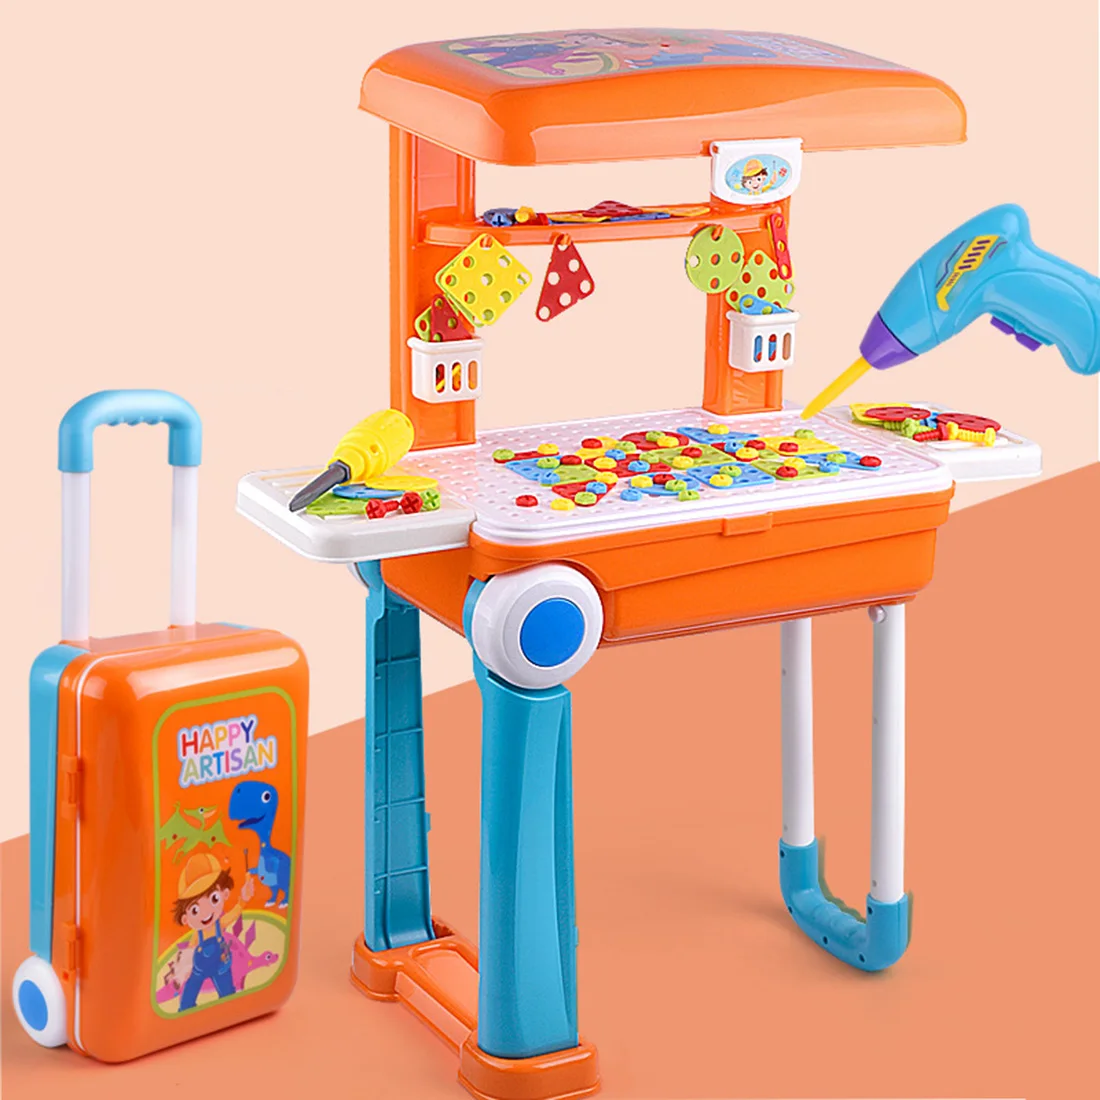 135 шт. детей Пластик ремонт верстак комплект притворяться инструментов складной чемодан развивающие игрушки ролевые игры инструмент игрушки для мальчиков